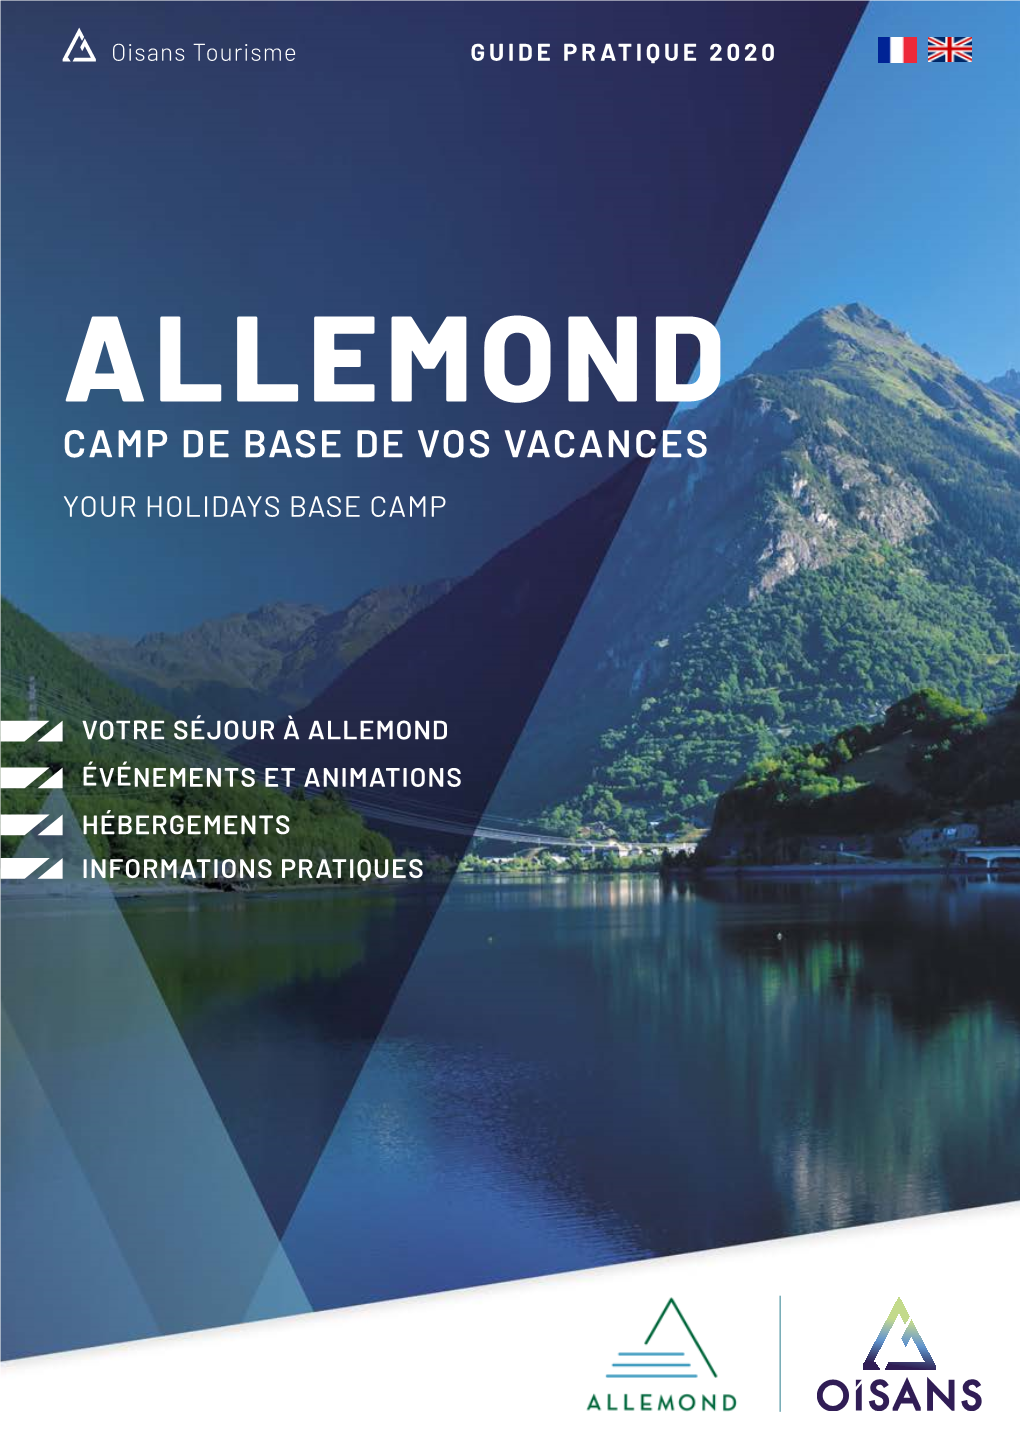 Allemond Camp De Base De Vos Vacances Your Holidays Base Camp